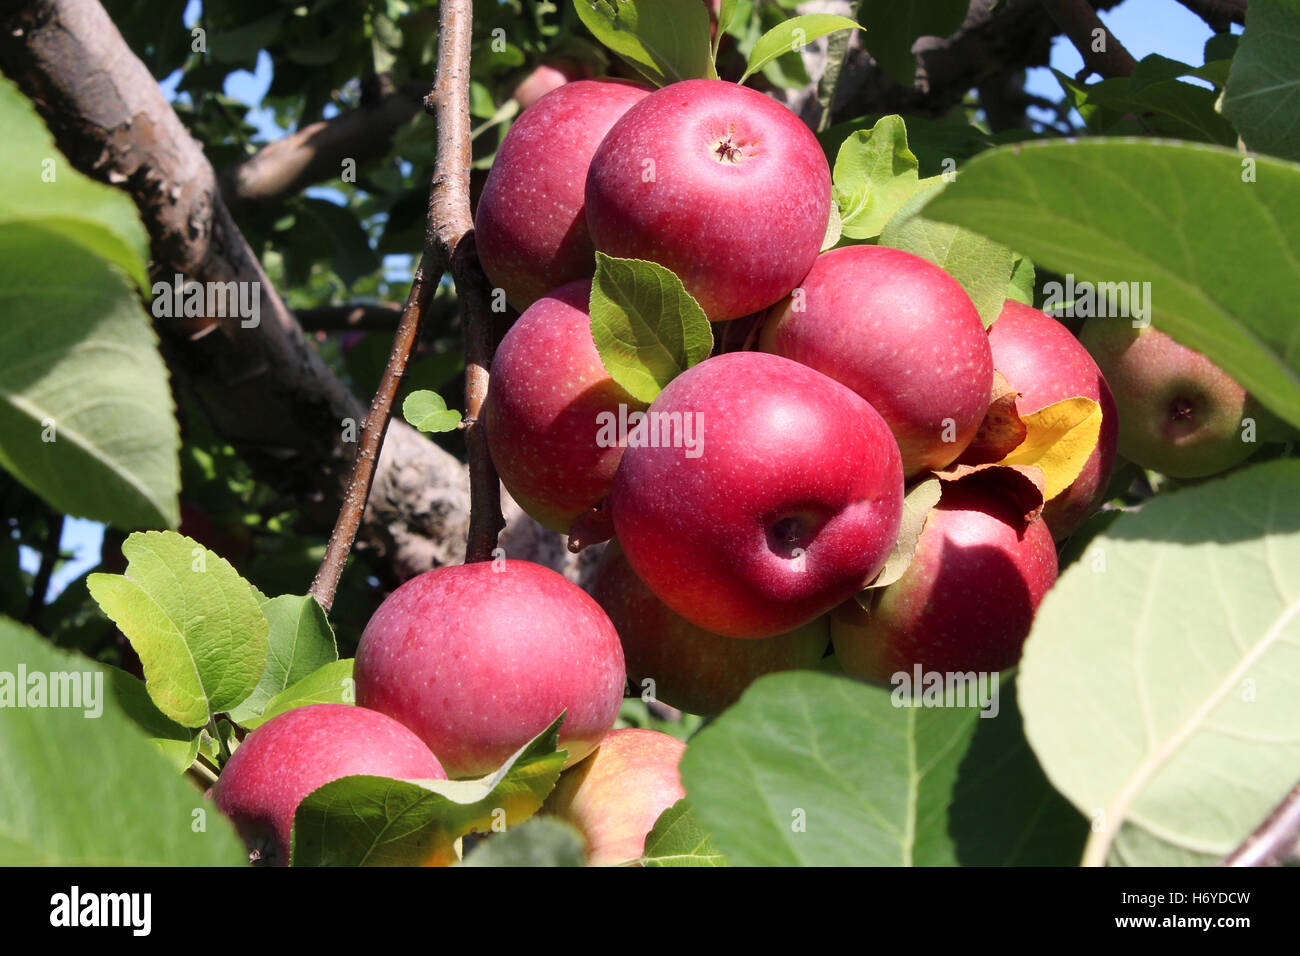 Apple Orchard Obst Cluster rote reife Äpfel in eine reiche Reihe auf einem Ast als eine landwirtschaftliche Ernte frische Naturkost aus einem Obstgarten. Stockfoto